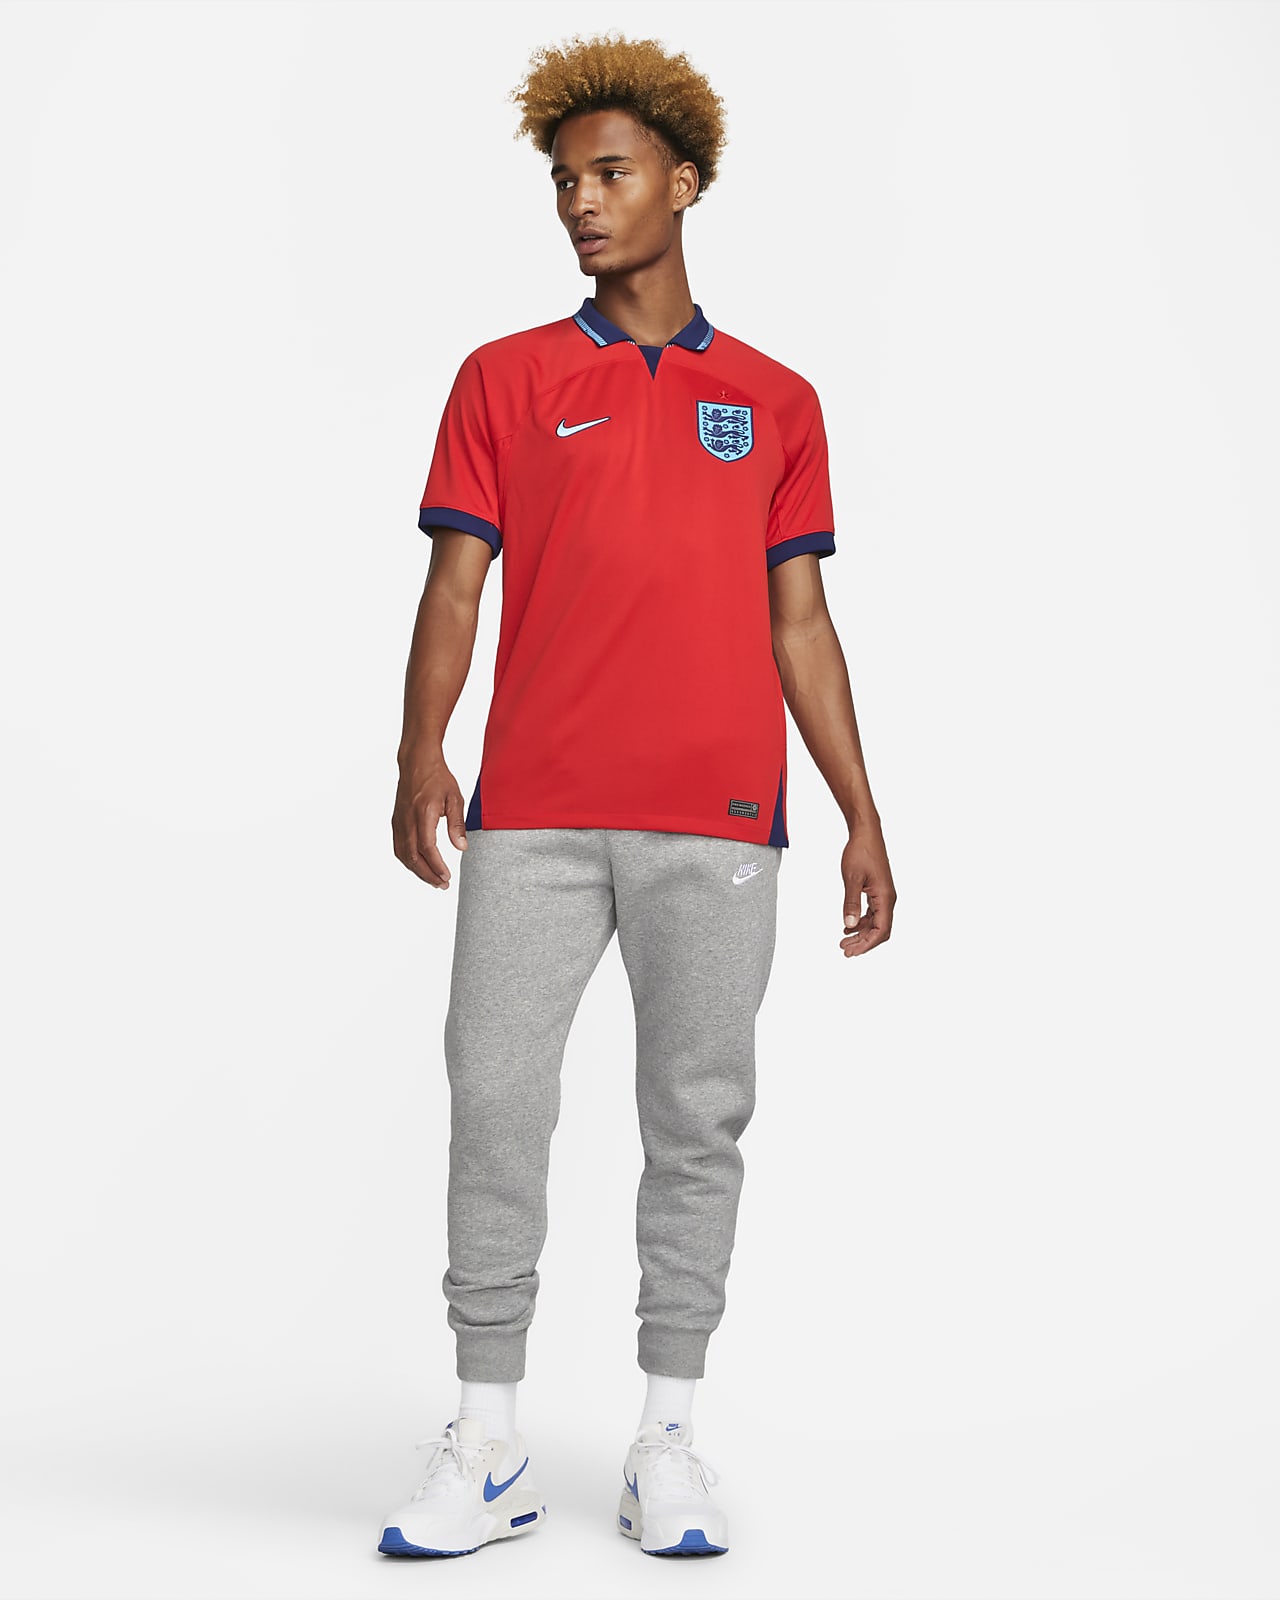 Men's Kits & Jerseys. Nike UK